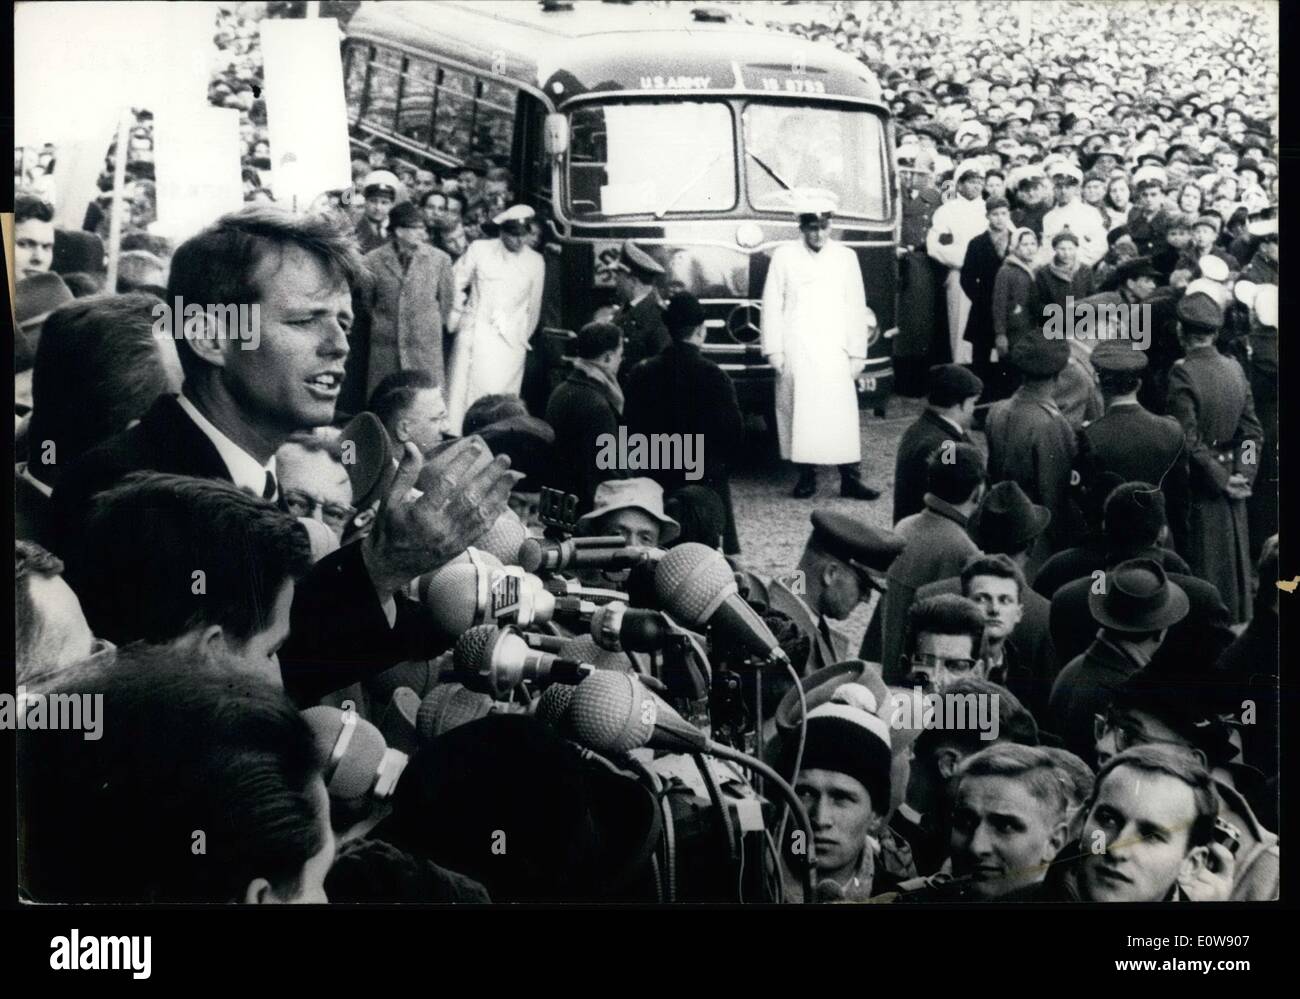 Febbraio 02, 1962 - Robert F. Kennedy di Berlino Ovest. Oggi il fratello del presidente americano, Procuratore Generale Robert F. Kennedy, venuto a Berlino Ovest per una due giorni di visita. Sulla piazza di fronte al Sch&ouml;neberger Rathaus parla di circa 100.000 i berlinesi. OPS: Robert F. Kennedy parla al i berlinesi. Foto Stock